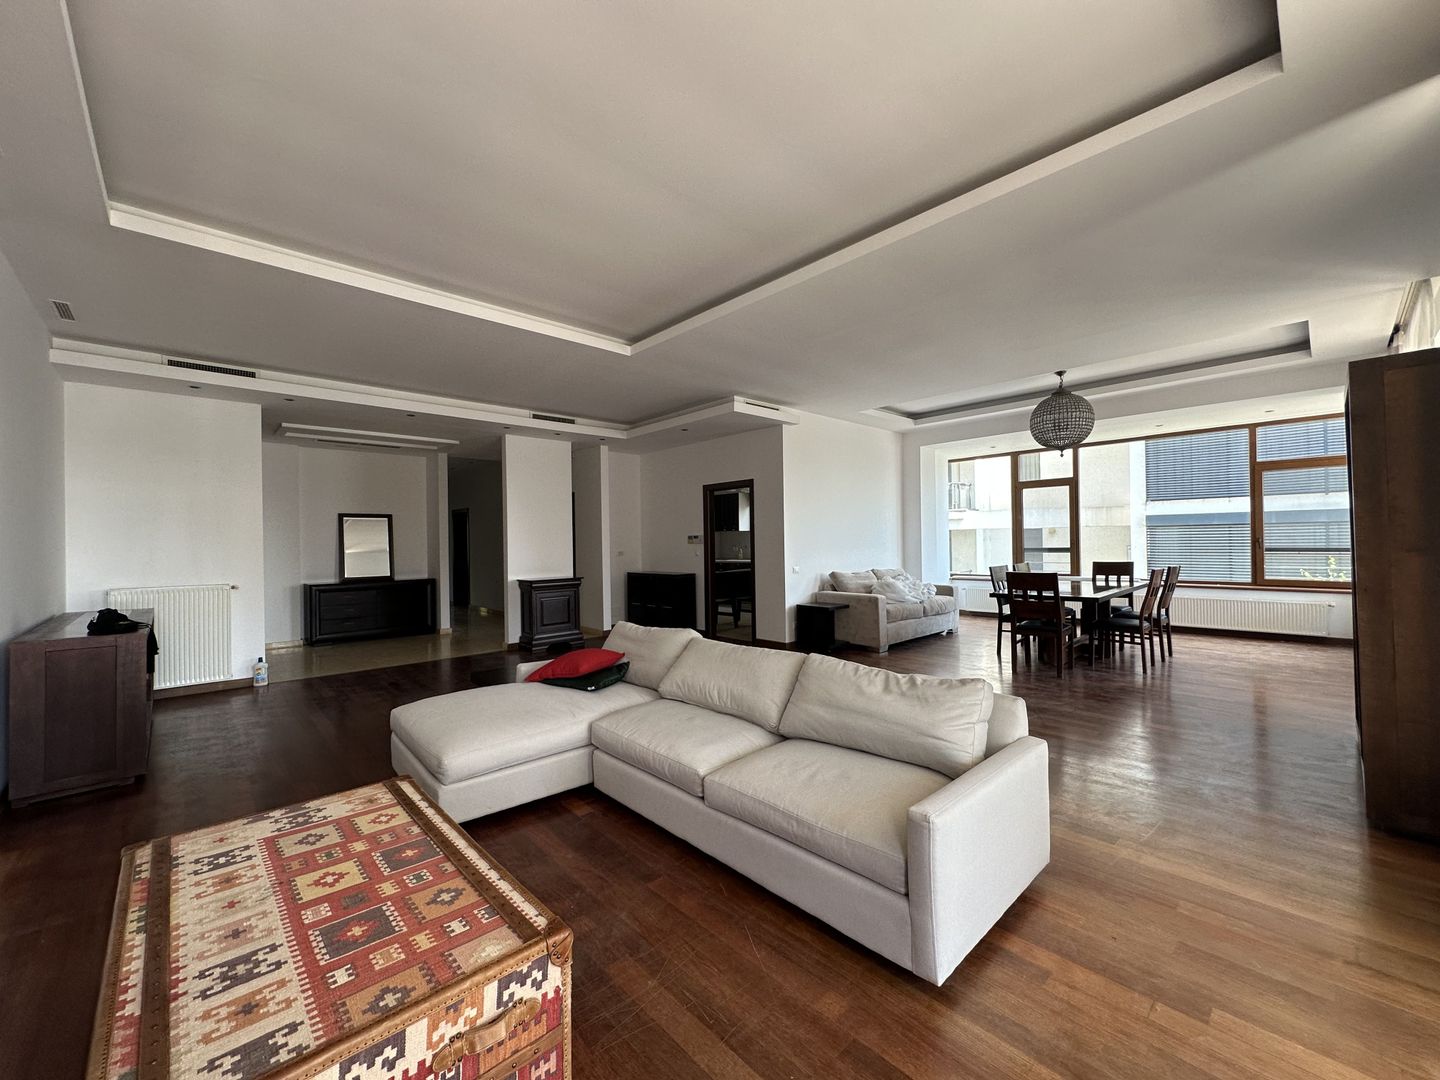 Gleen Suite | Apartament luminos si spatios cu vedere deschisa | Barbu Vacarescu